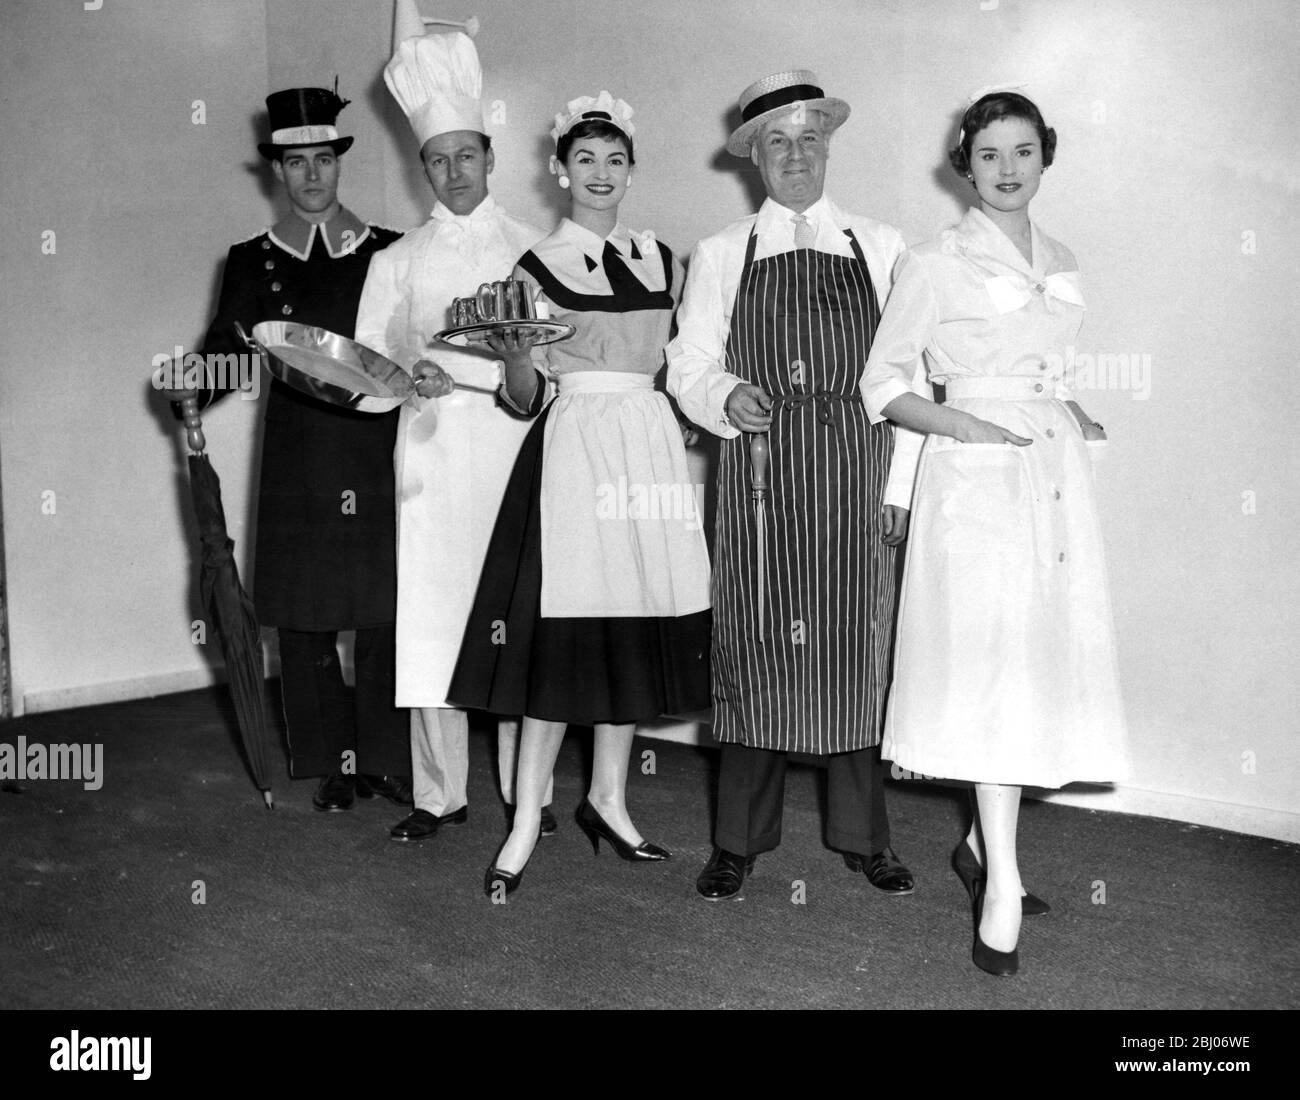 Internationale Hotel- und Gastronomieausstellung in Olympia. Nylon Outfits für die Gastronomie. 1958 Stockfoto